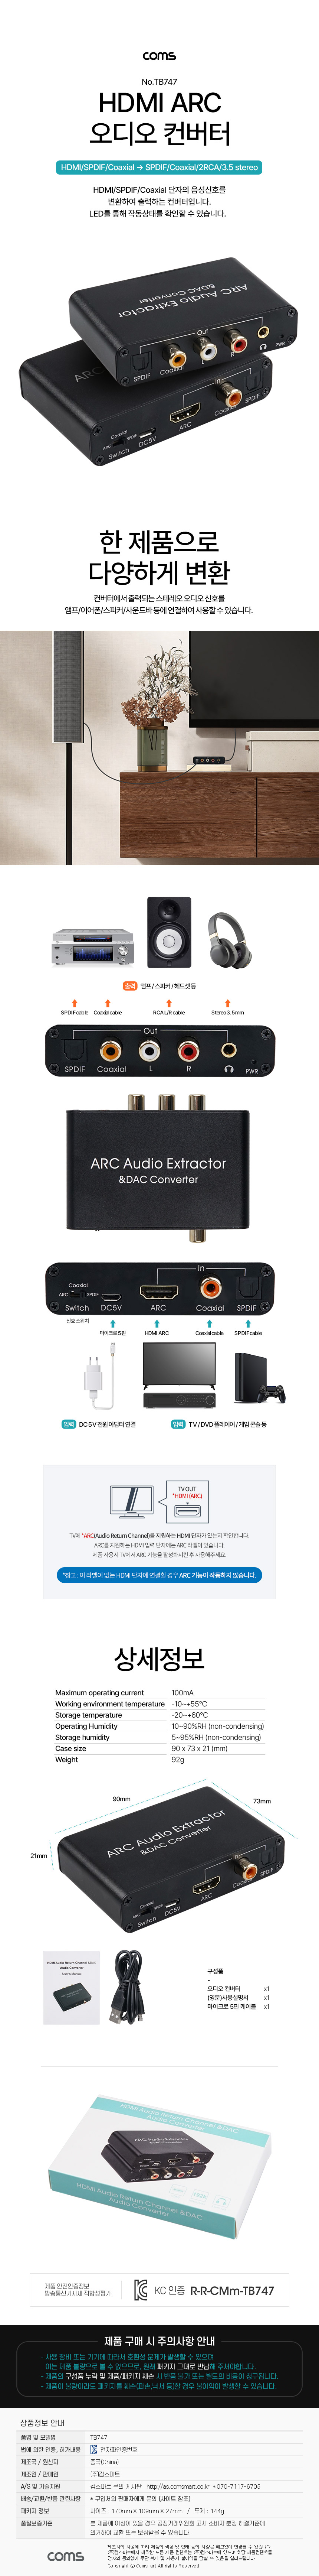 오디오광 컨버터 HDMI ARC/DAC 아날로그 오디오 스테레오 5.1ch